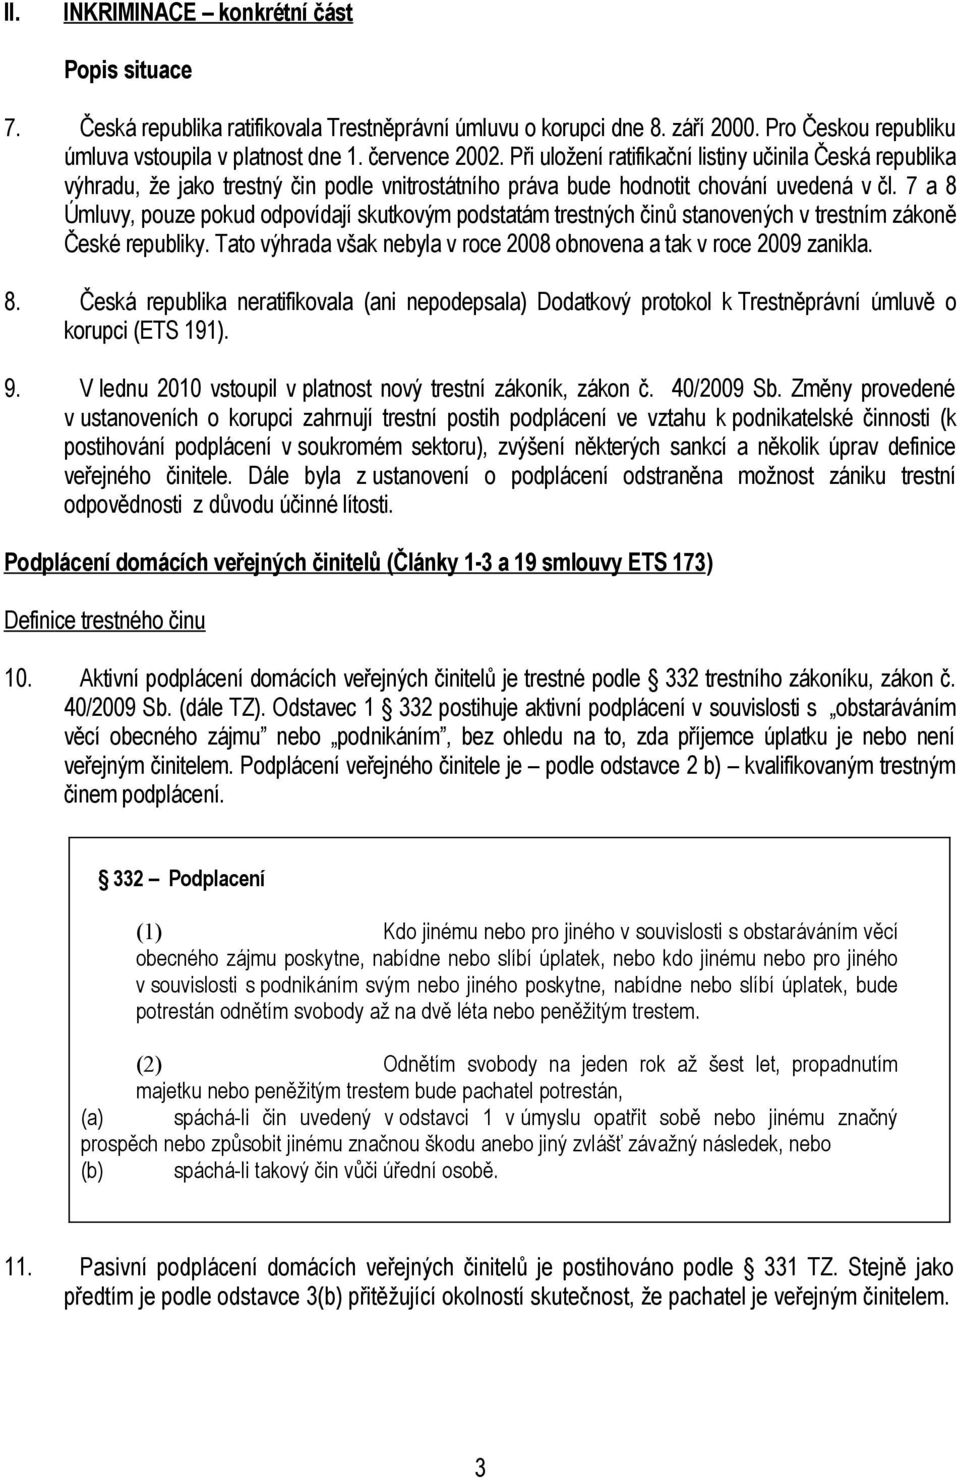 7 a 8 Úmluvy, pouze pokud odpovídají skutkovým podstatám trestných činů stanovených v trestním zákoně České republiky. Tato výhrada však nebyla v roce 2008 obnovena a tak v roce 2009 zanikla. 8. Česká republika neratifikovala (ani nepodepsala) Dodatkový protokol k Trestněprávní úmluvě o korupci (ETS 191).